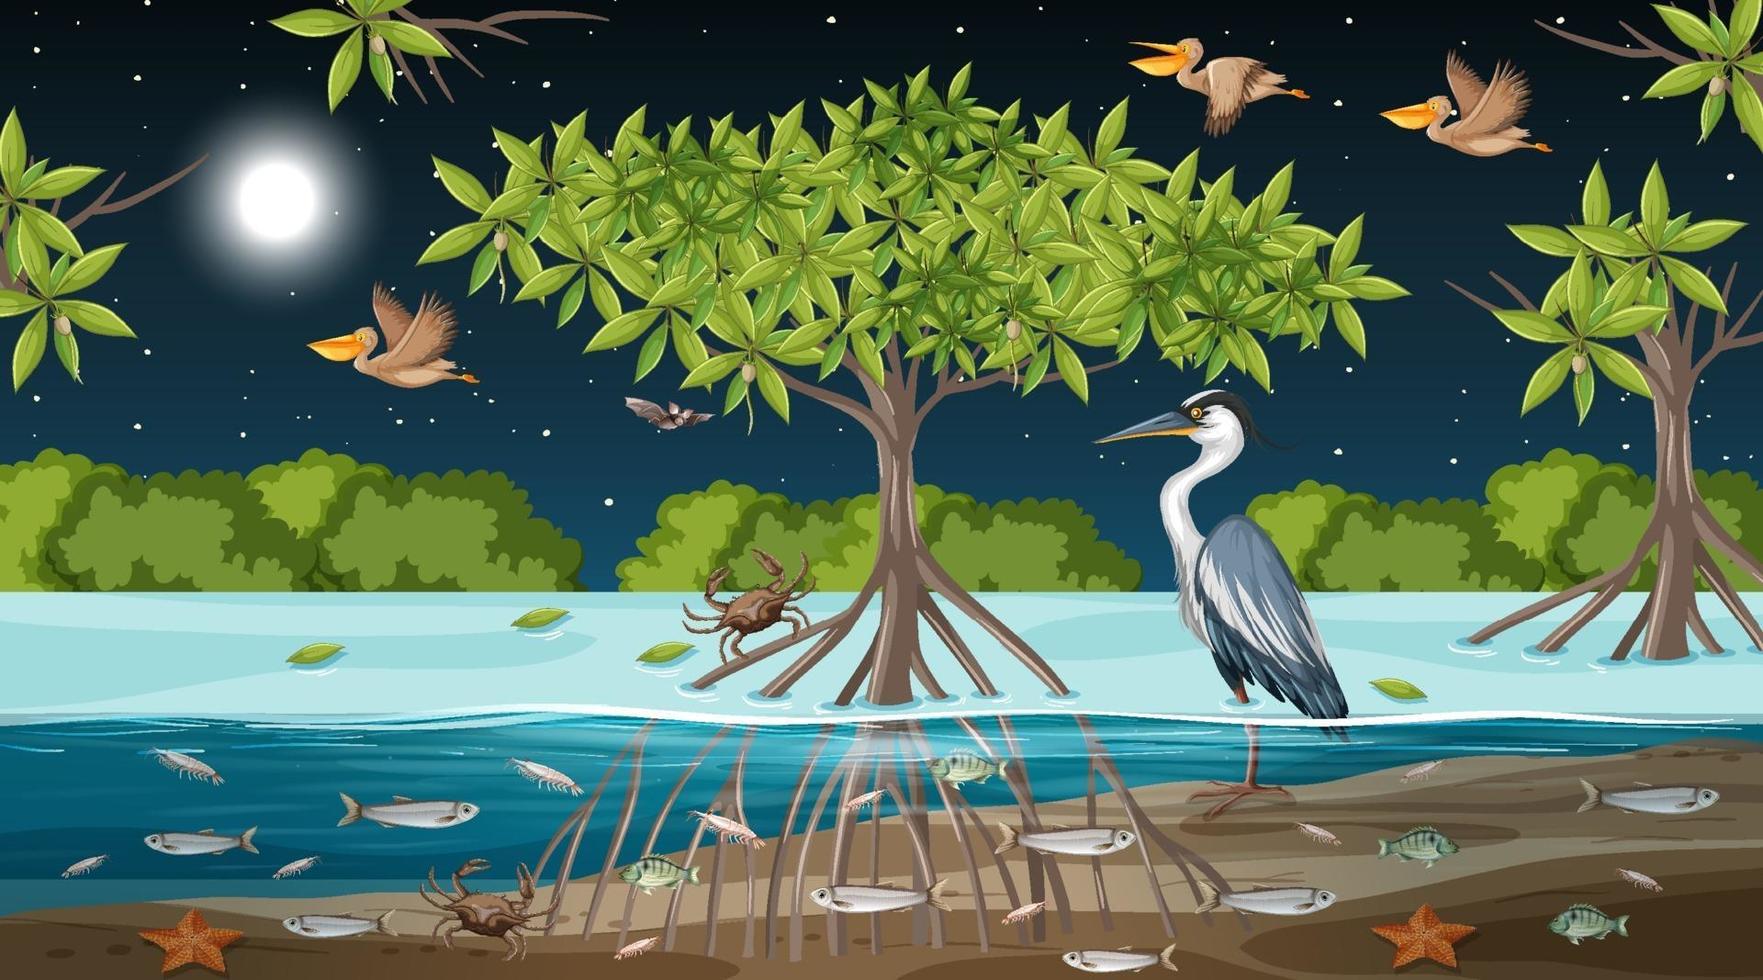 Escena del paisaje del bosque de manglares en la noche vector